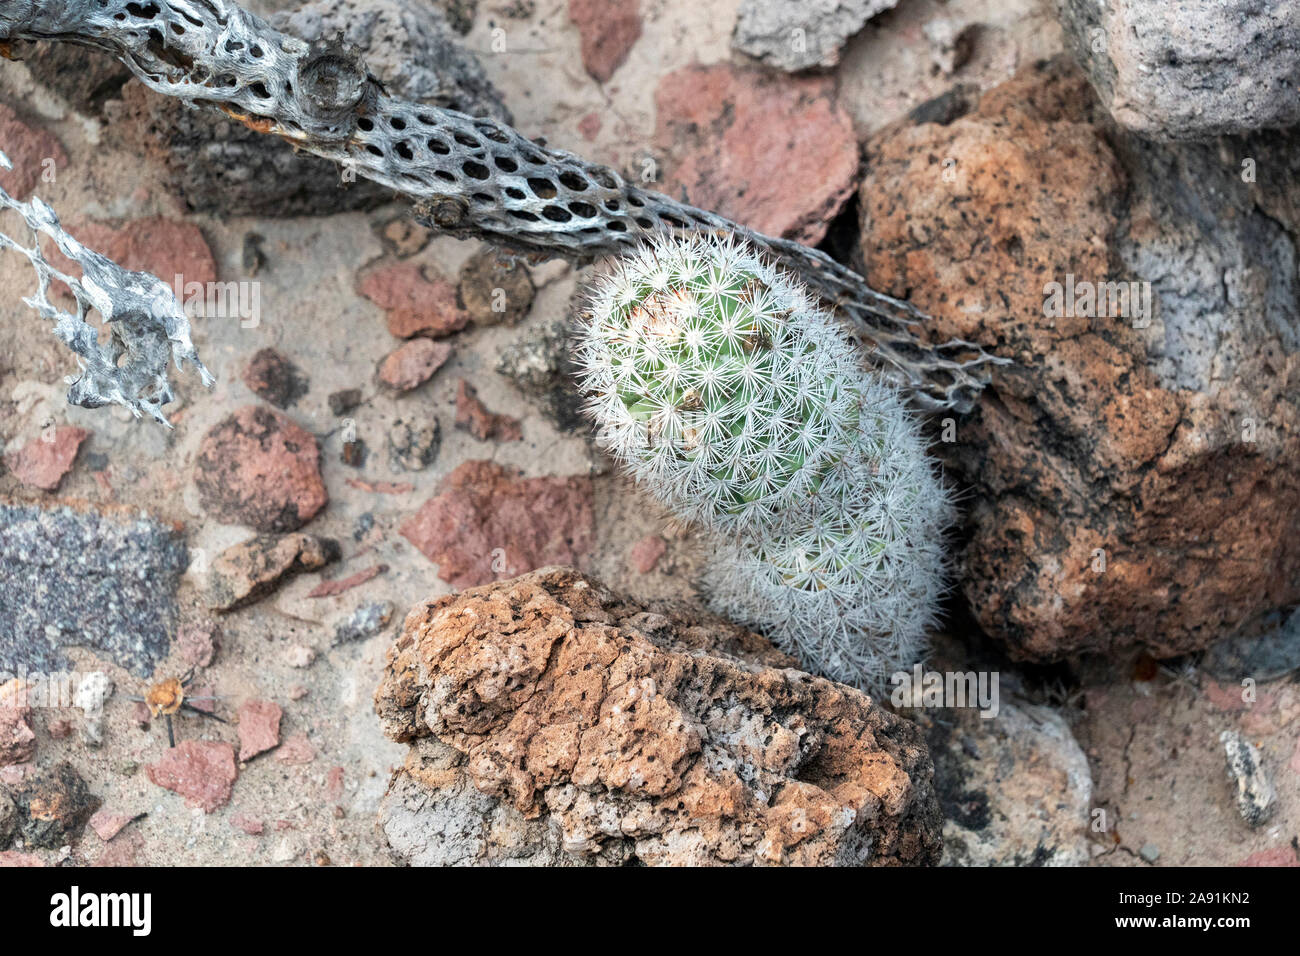 Mammillaria armillata baja california sur mexico endemic cactus Stock Photo